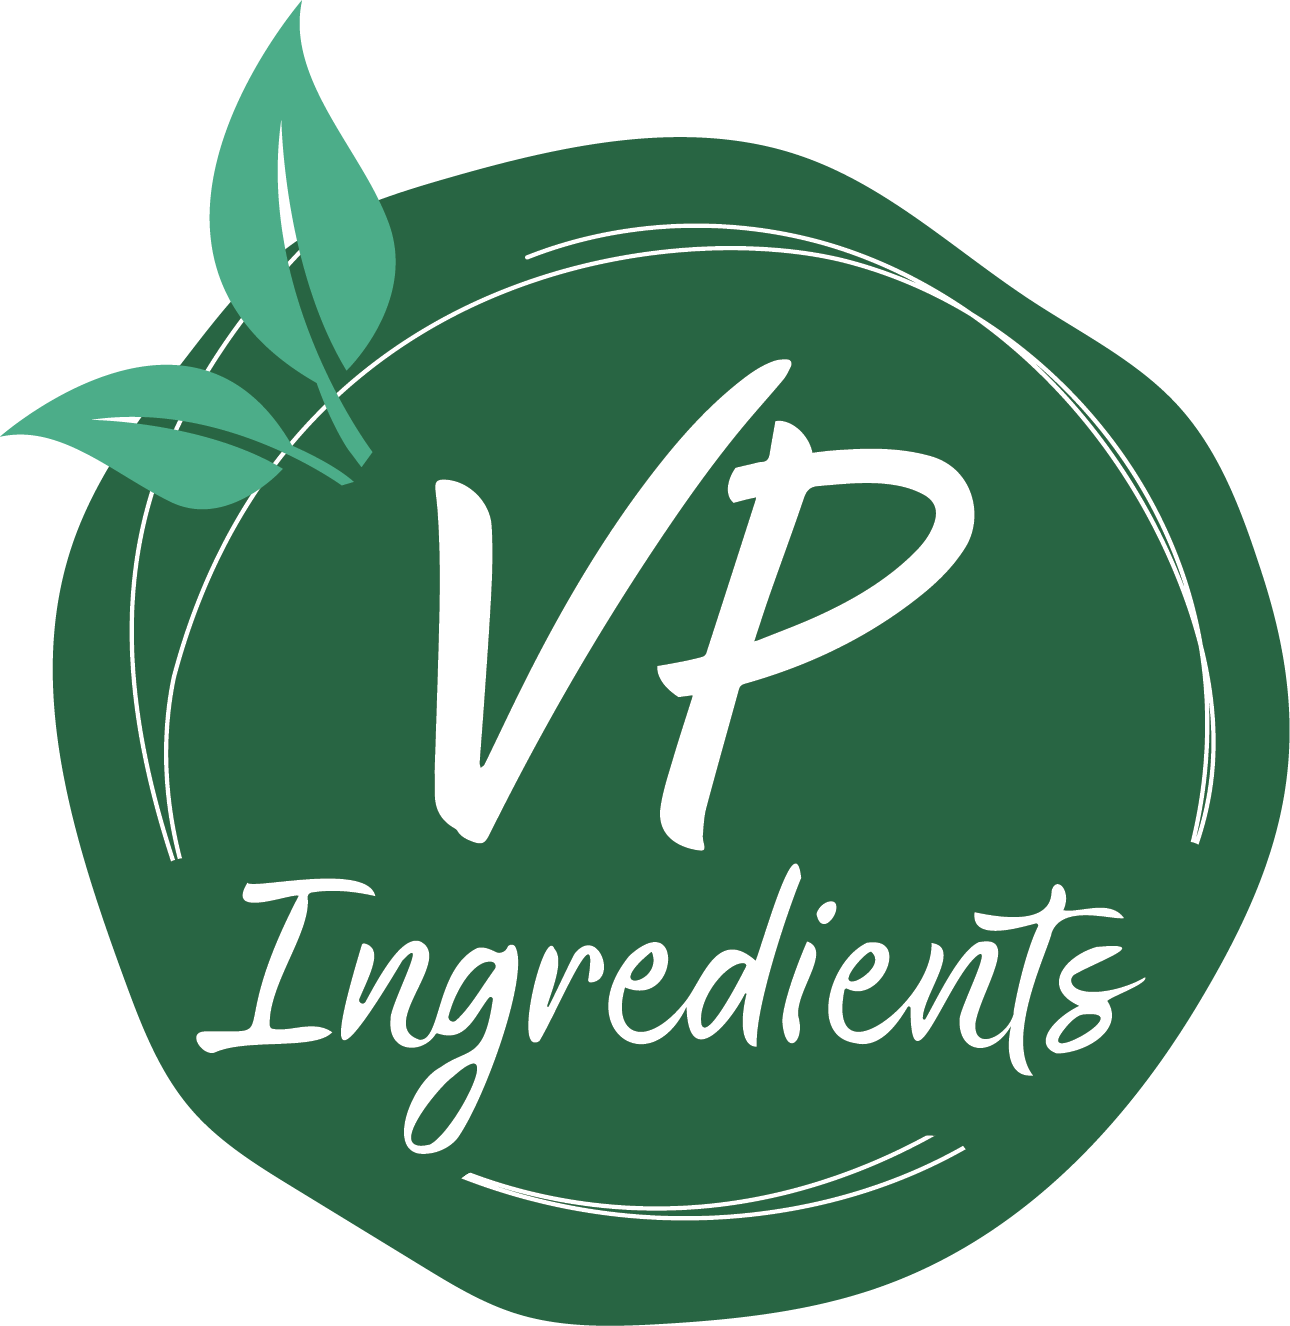 VP Ingredients